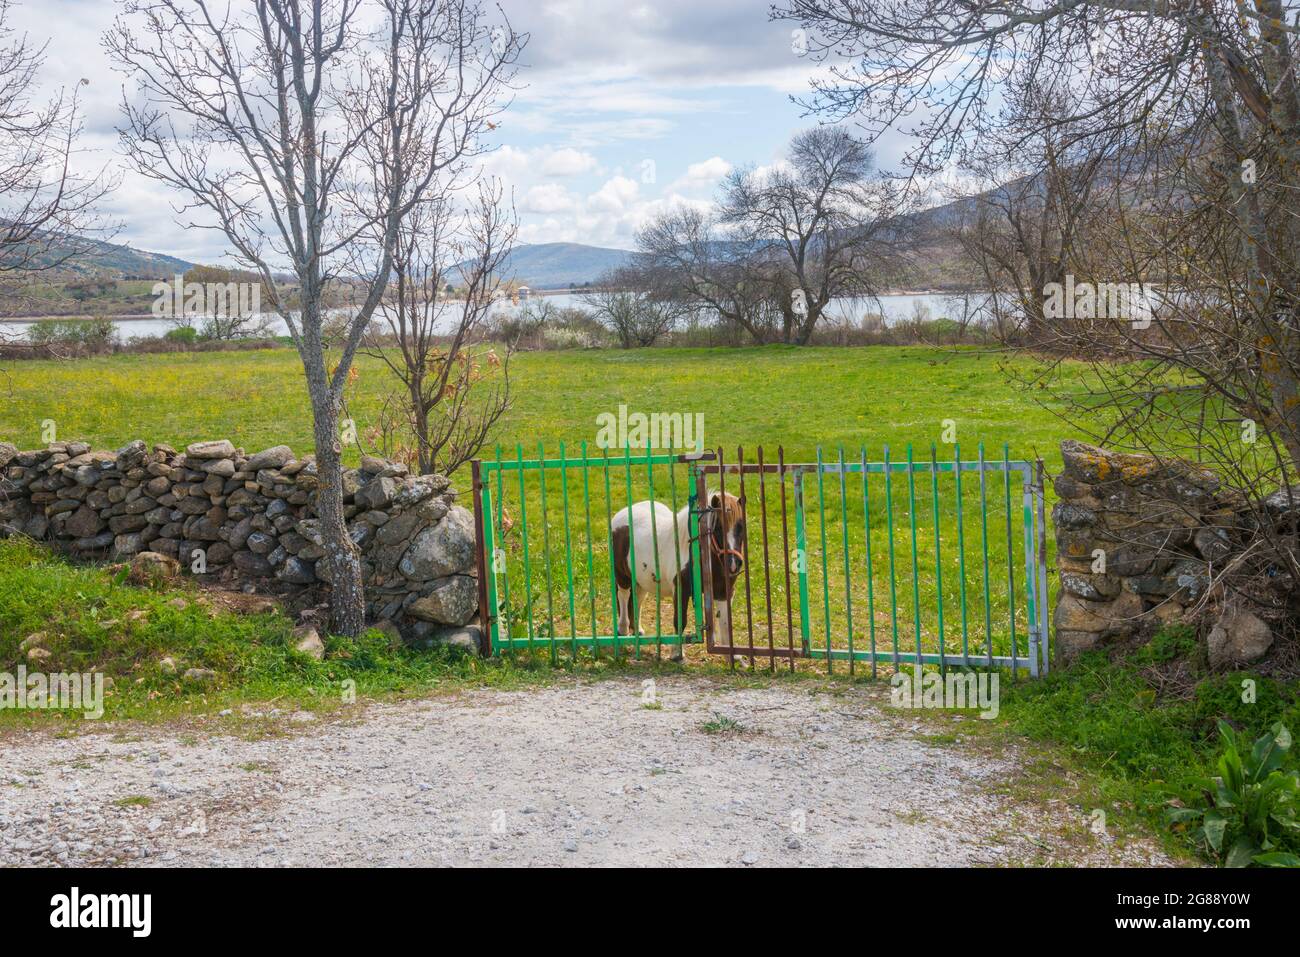 Poney dans un champ, près de la porte. Lozoya, province de Madrid, Espagne. Banque D'Images